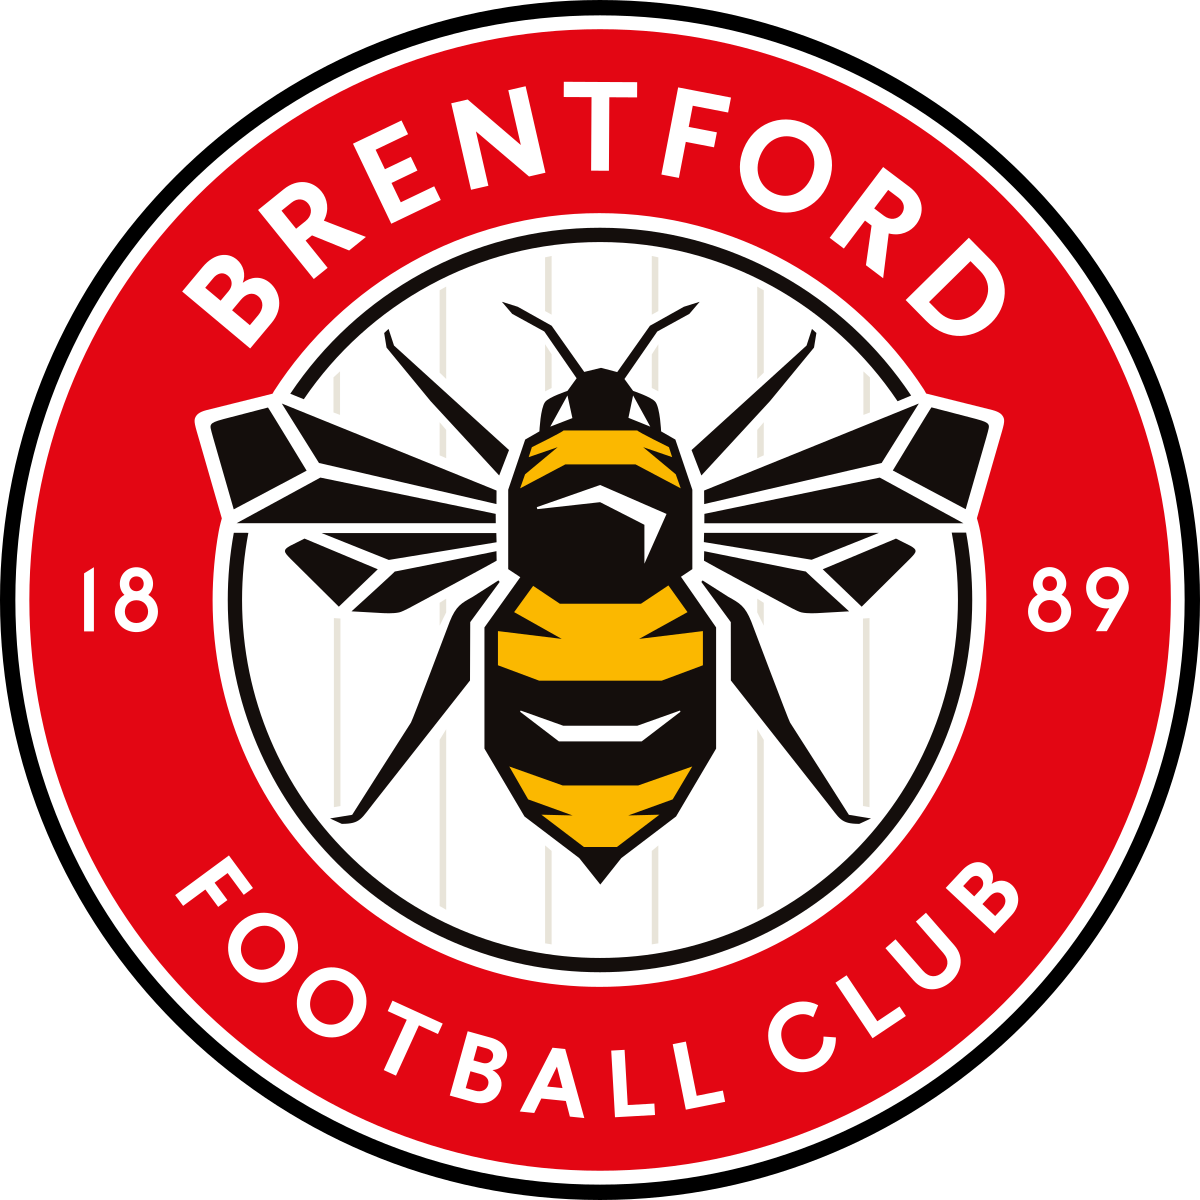 Brentford Fc Logo - KibrisPDR